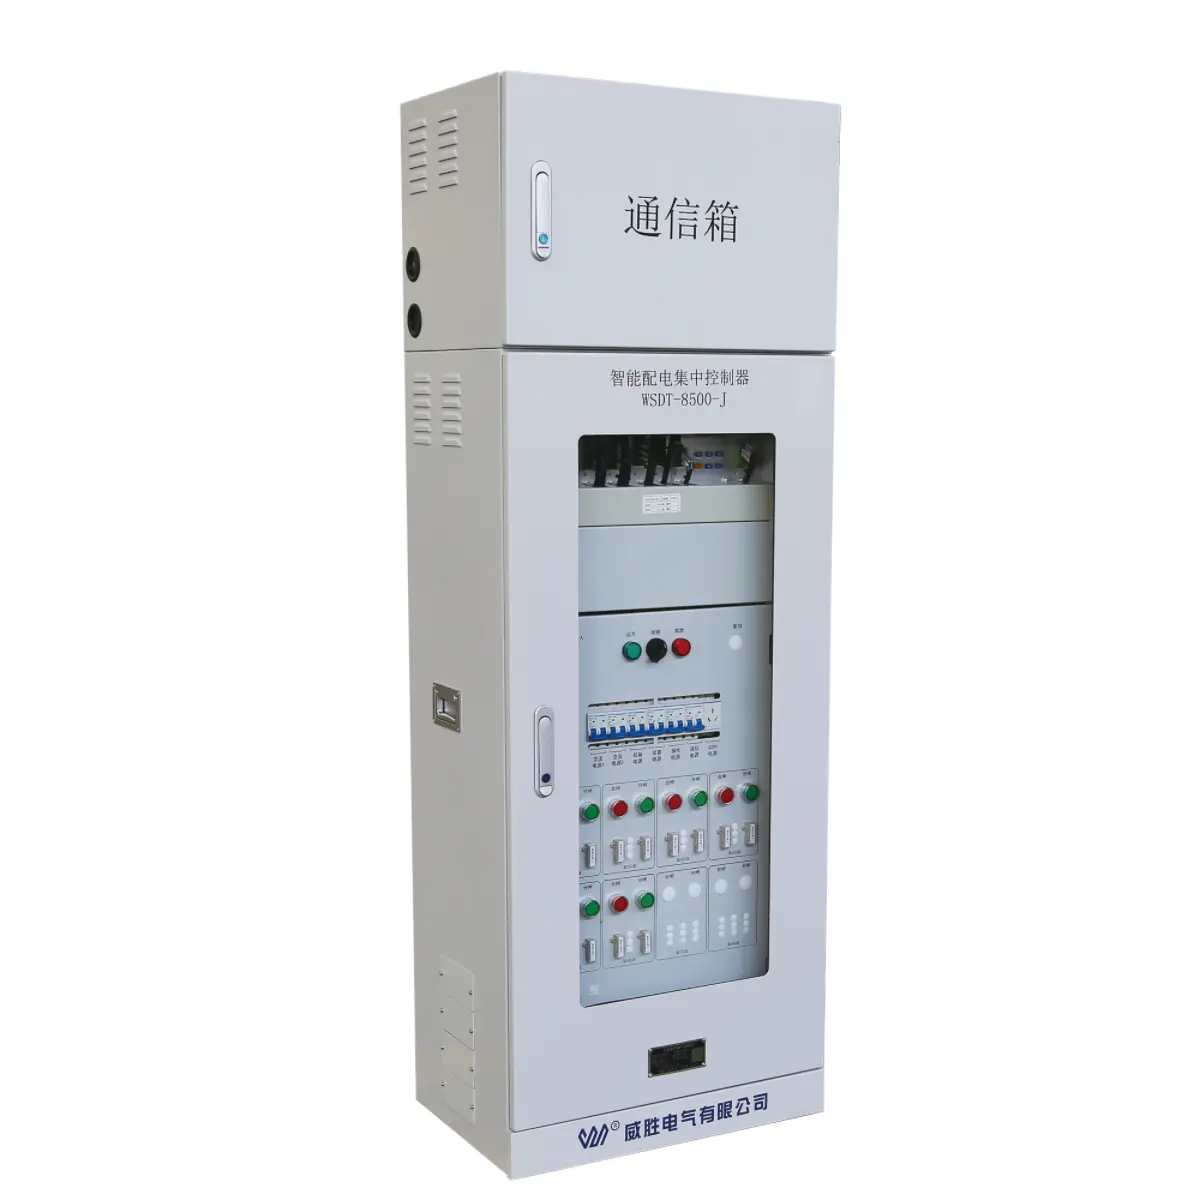 Controlador inteligente de distribución de energía Sistema de distribución de energía con controlador inteligente de distribución de energía eléctrica